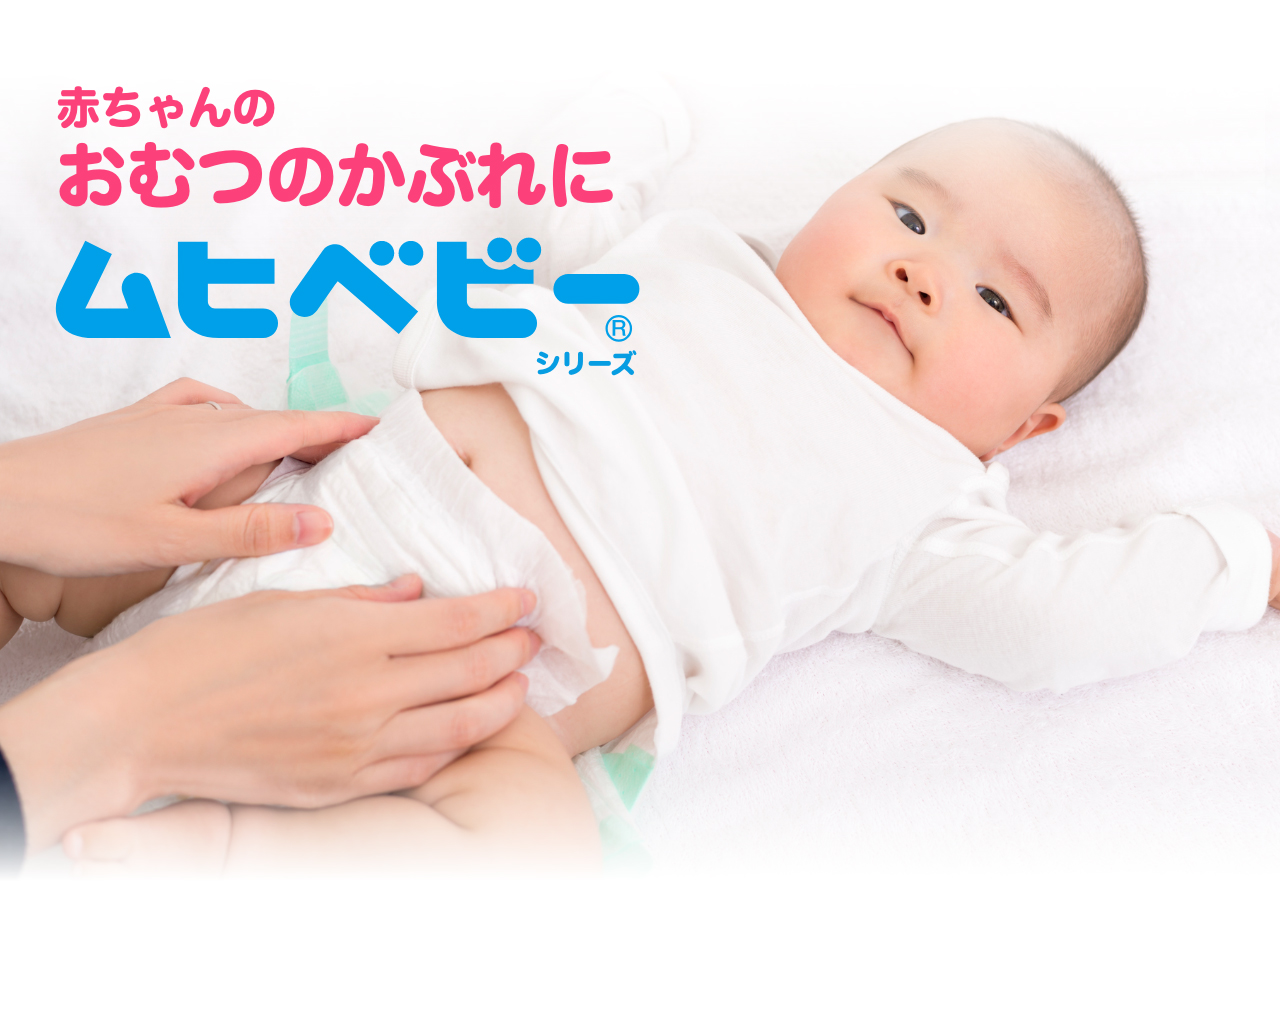 赤ちゃんのおむつのかぶれに ムヒベビーシリーズブランドサイト 池田模範堂